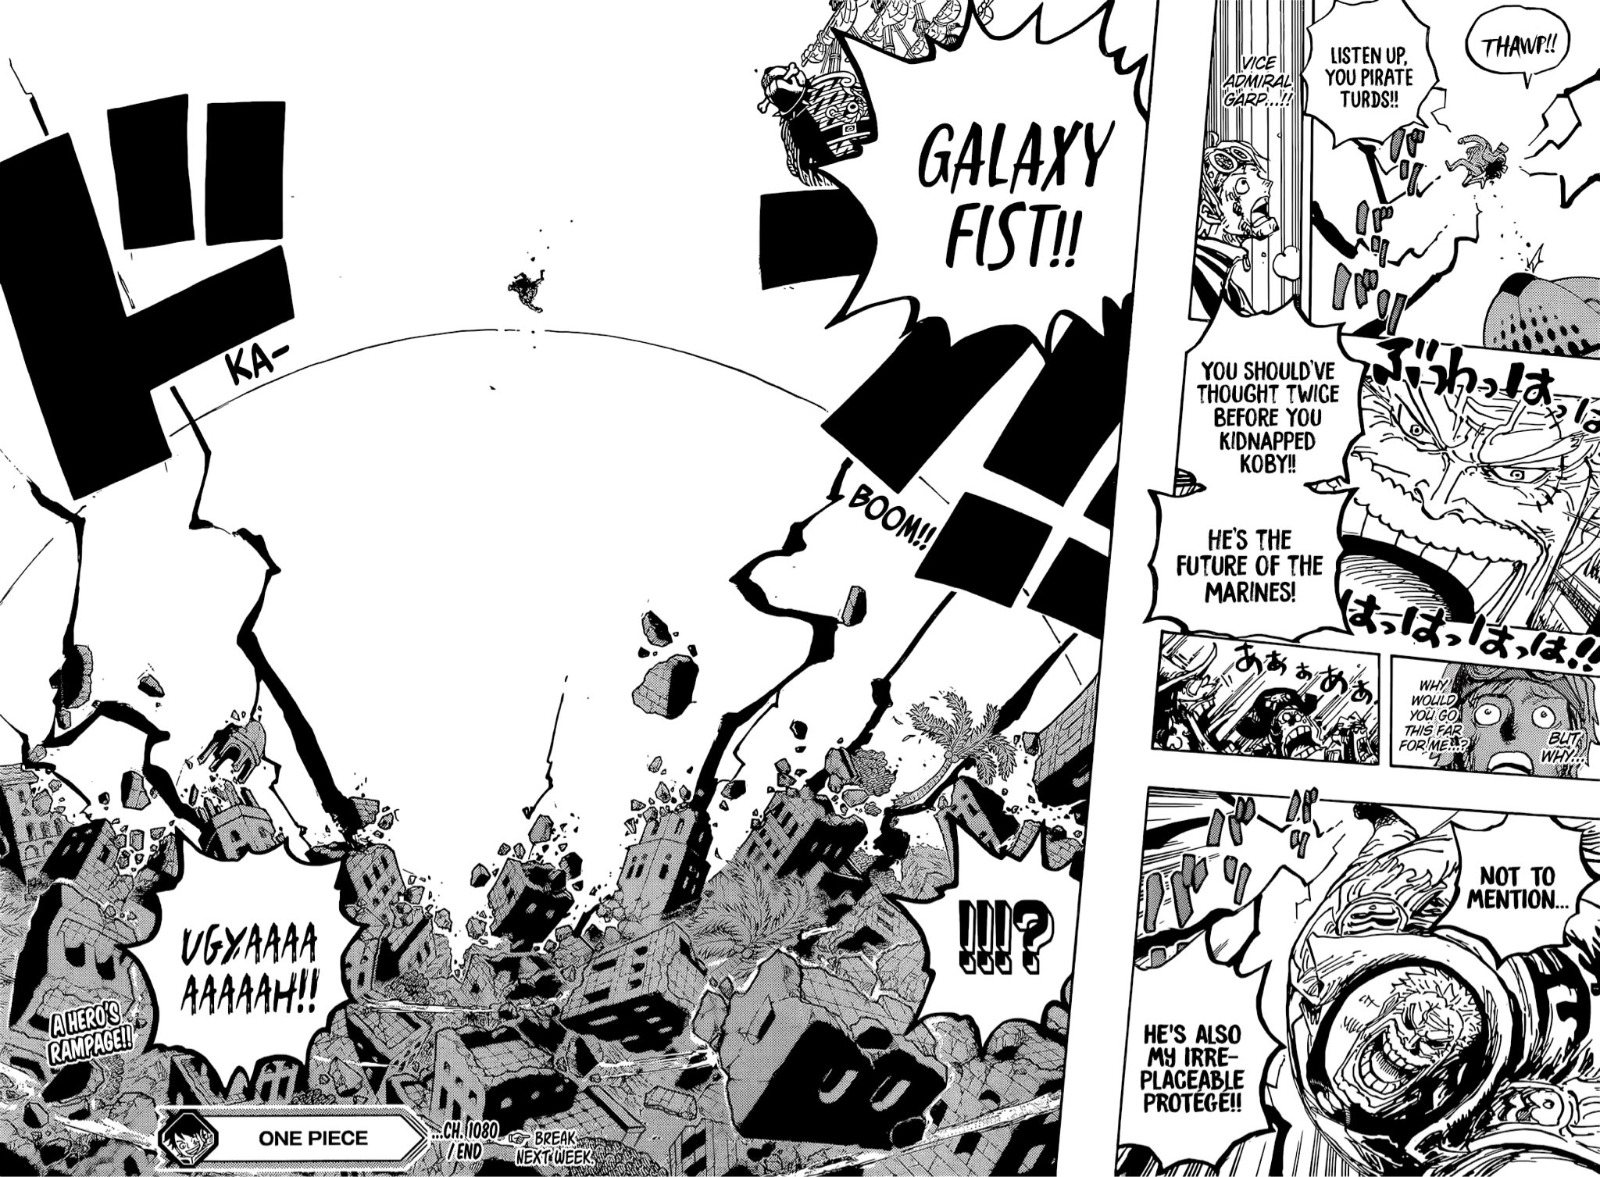 Spoiler One Piece 1080, Entry Epik Garp dengan Galaxy Fist, Pulau Hachinosu Bubuk!